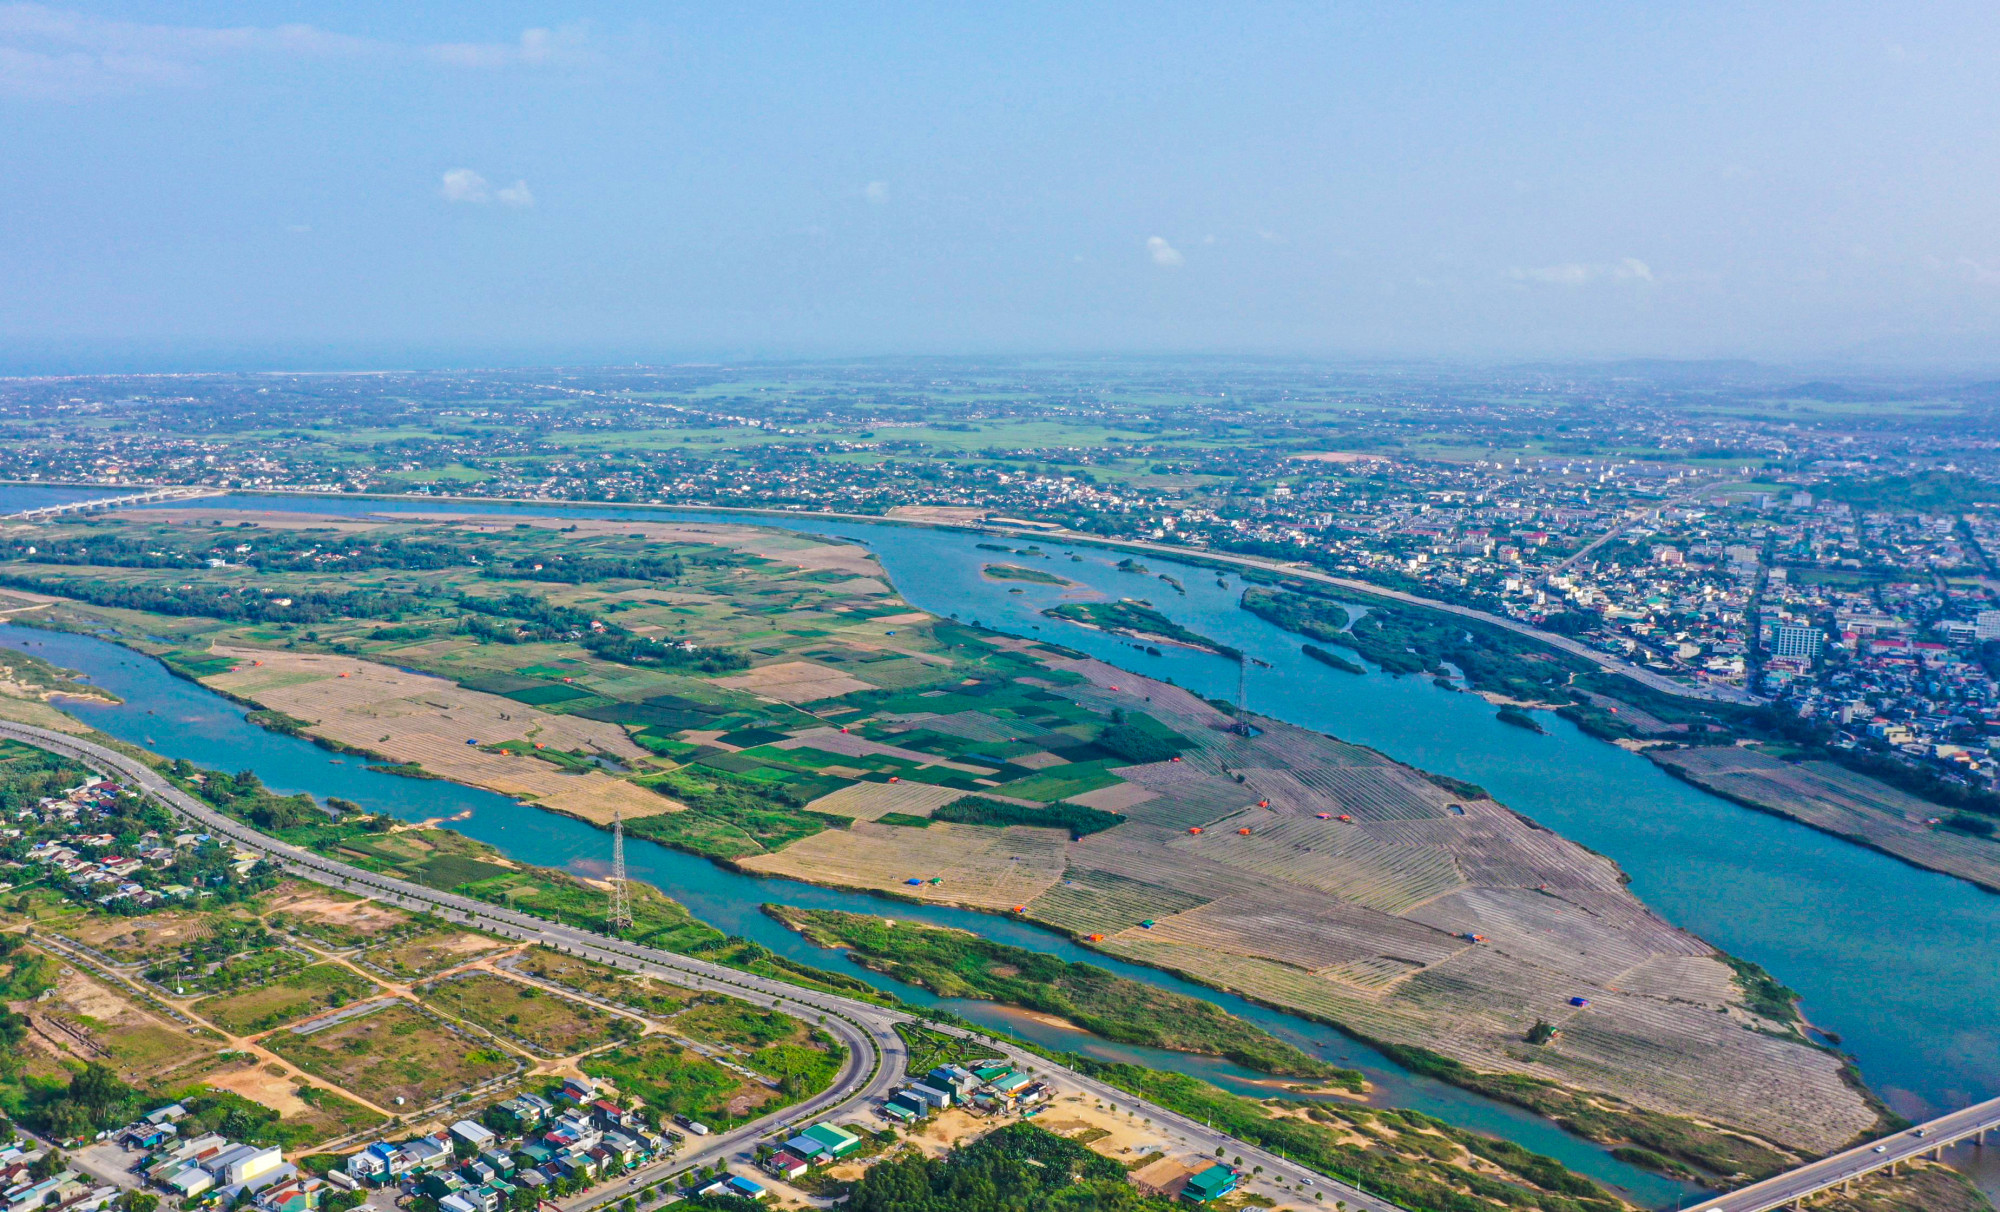 Khu vực sẽ hình thành khu đô thị giữa sông Trà Khúc - ảnh L.P